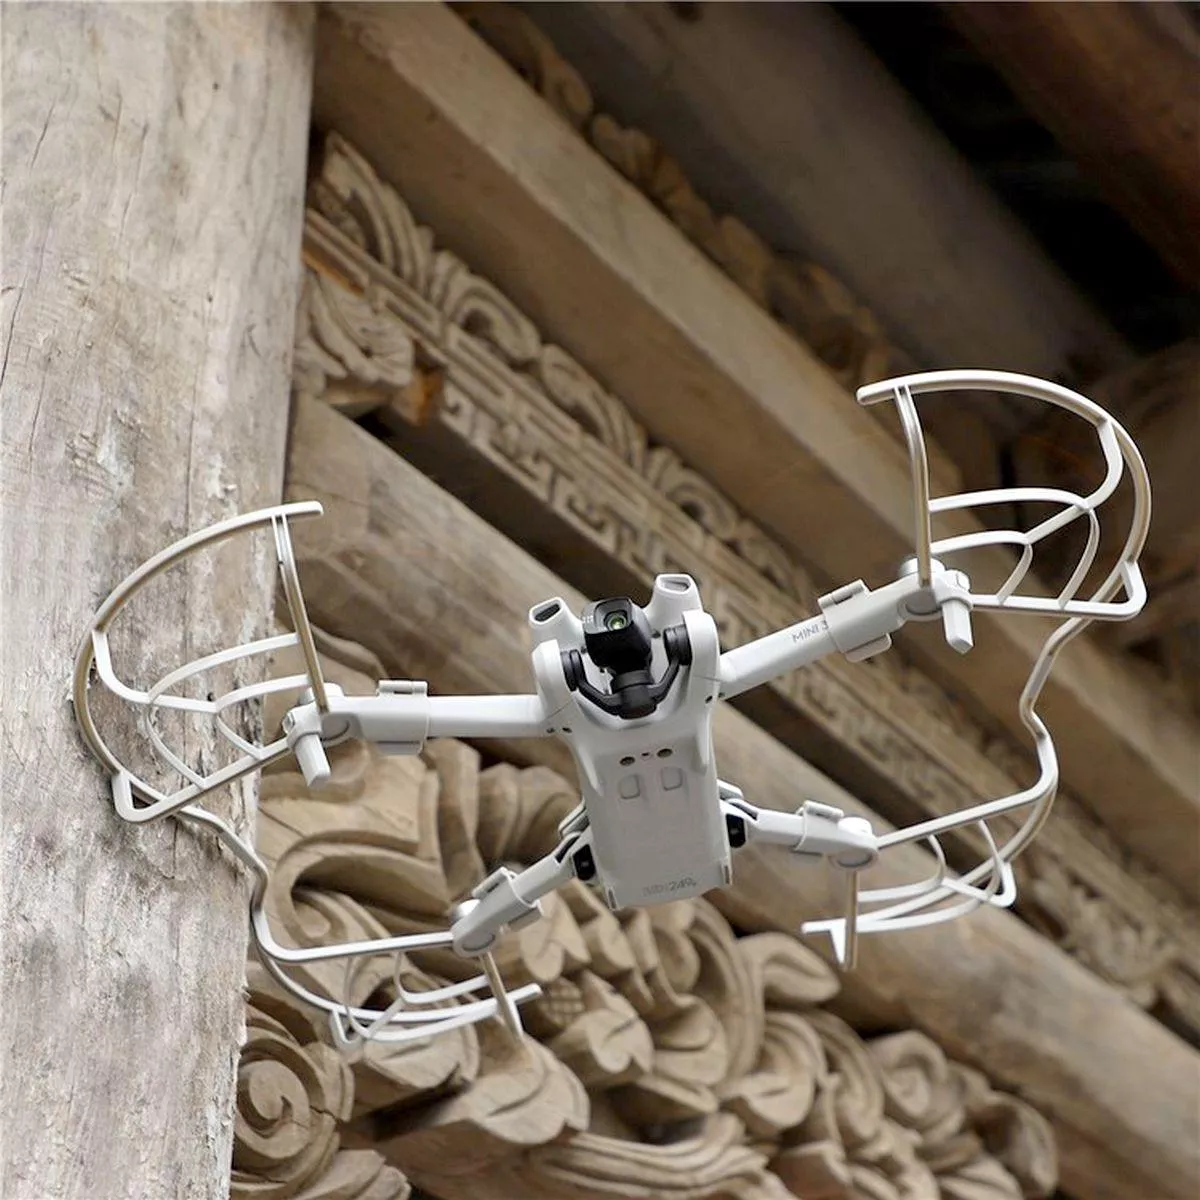 Segunda imagem para pesquisa de pecas drone dji